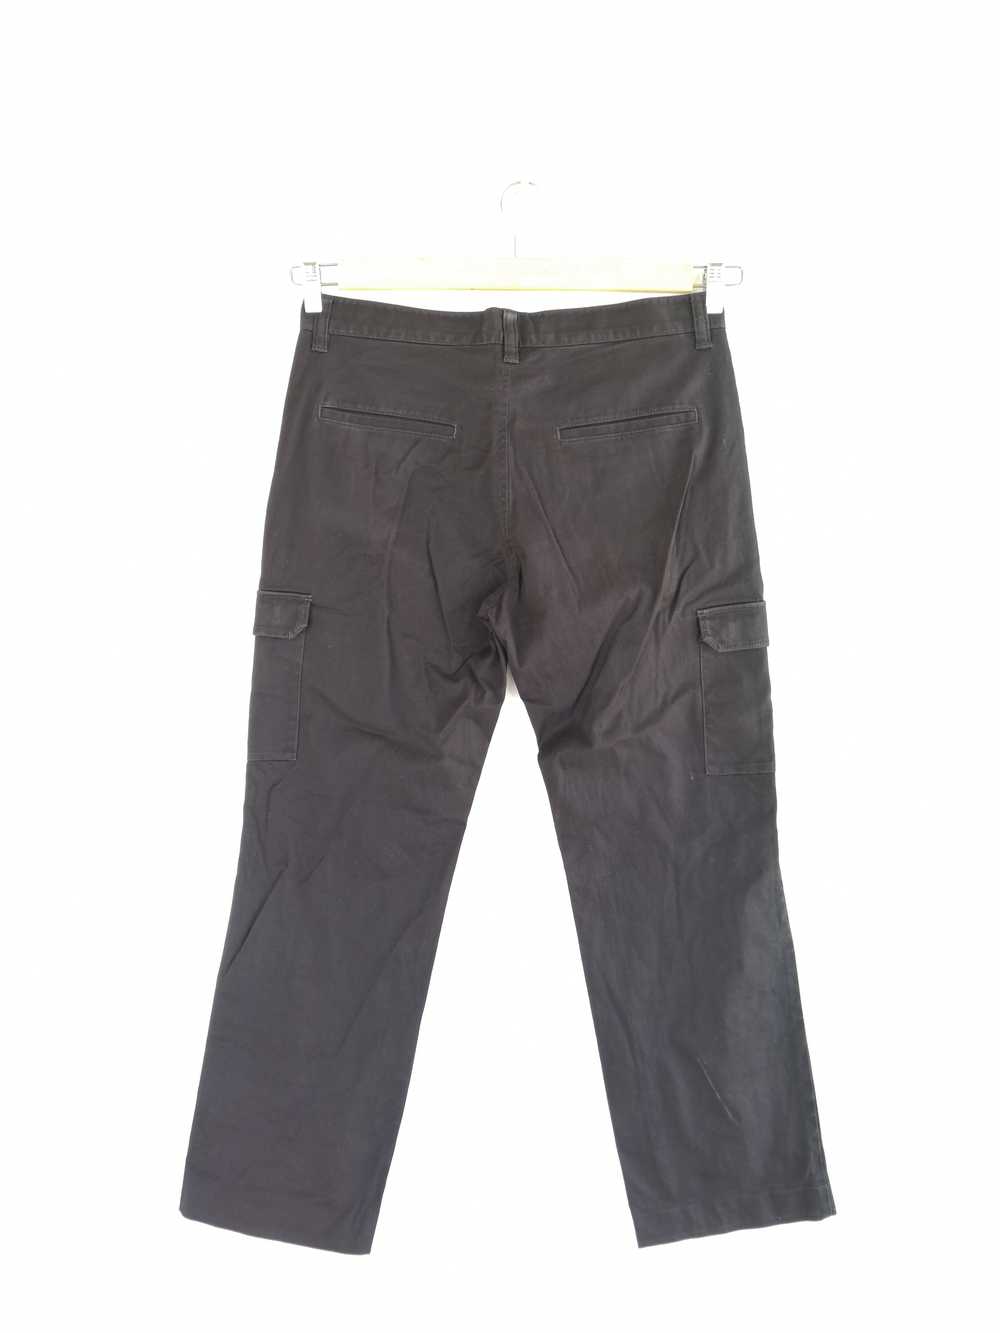 Vintage - GDO Japanese Cargo Pants Bondage Trouse… - image 2